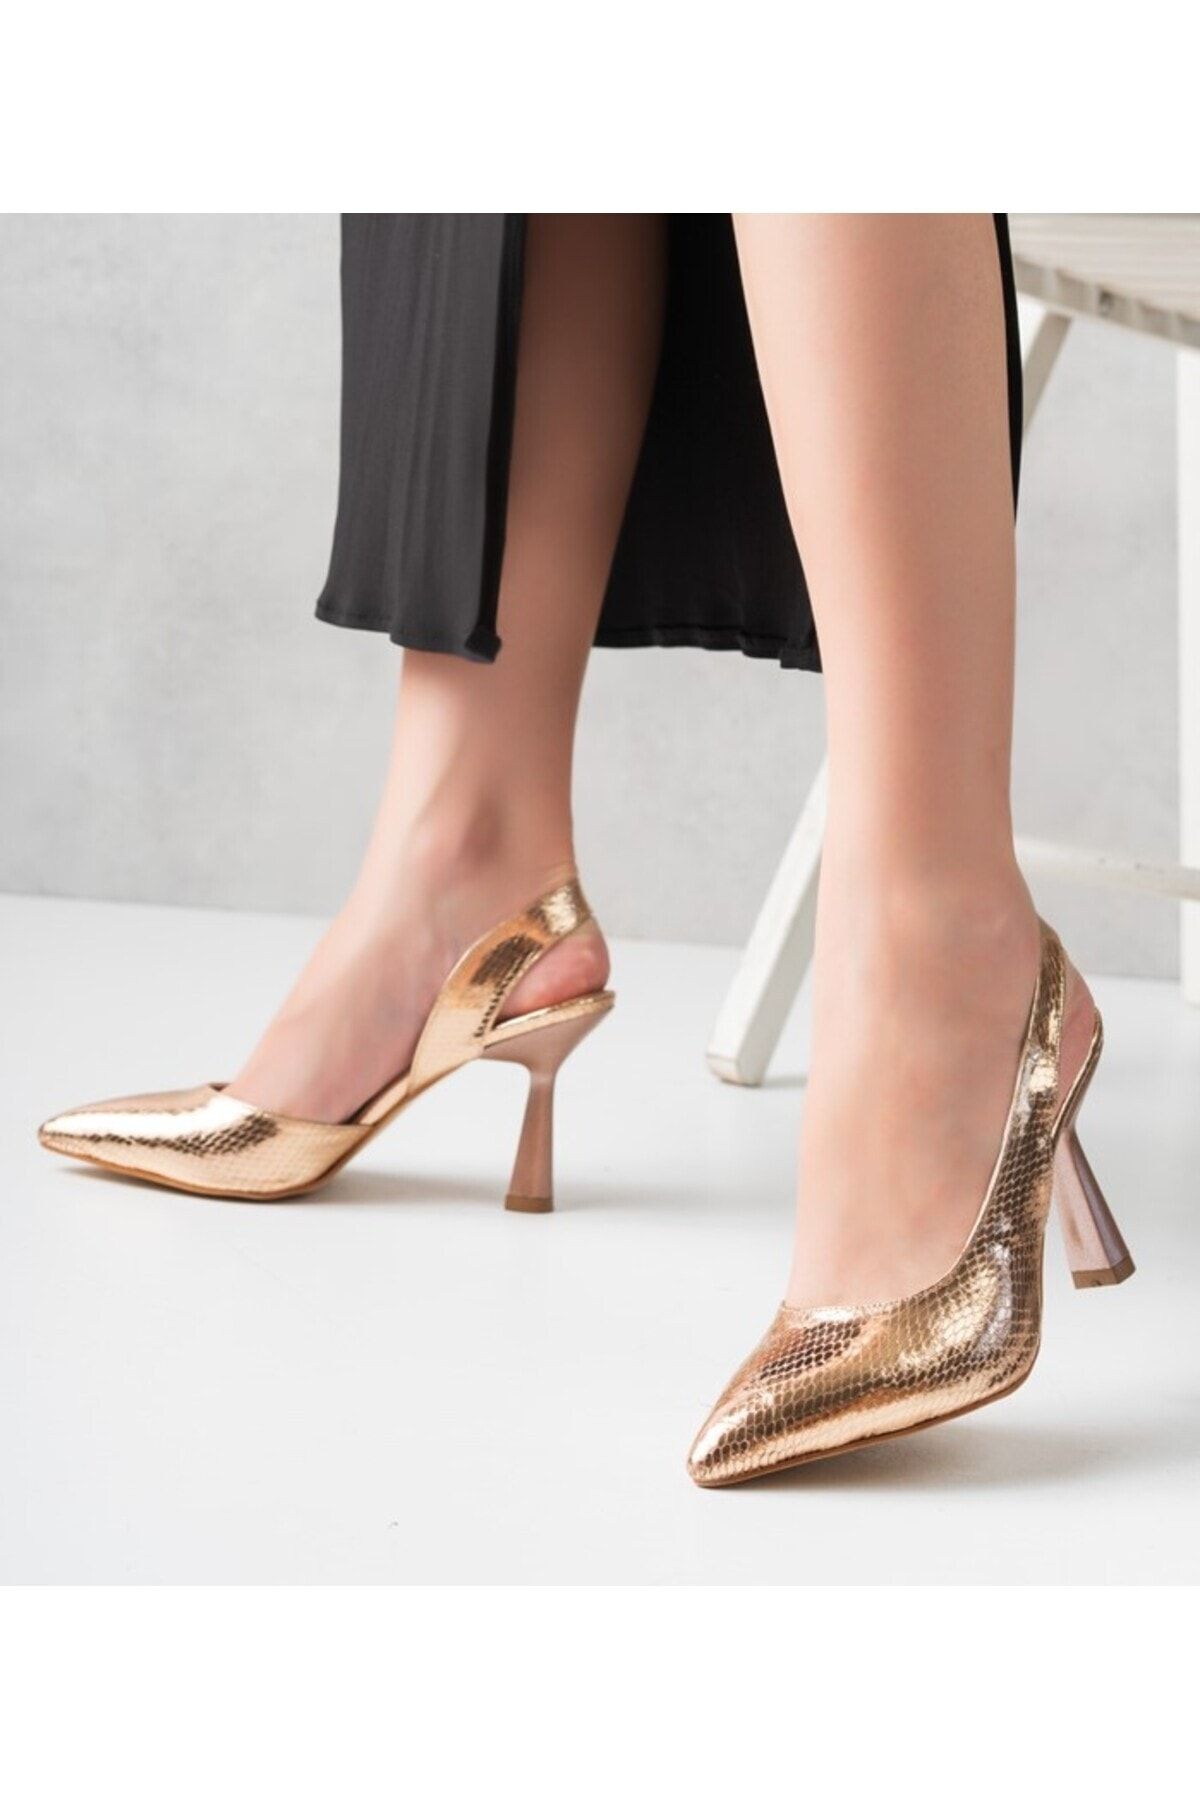 Genetti Home Metalik Renk Yılan Derisi Desenli Kadın Topuklu Ayakkabı